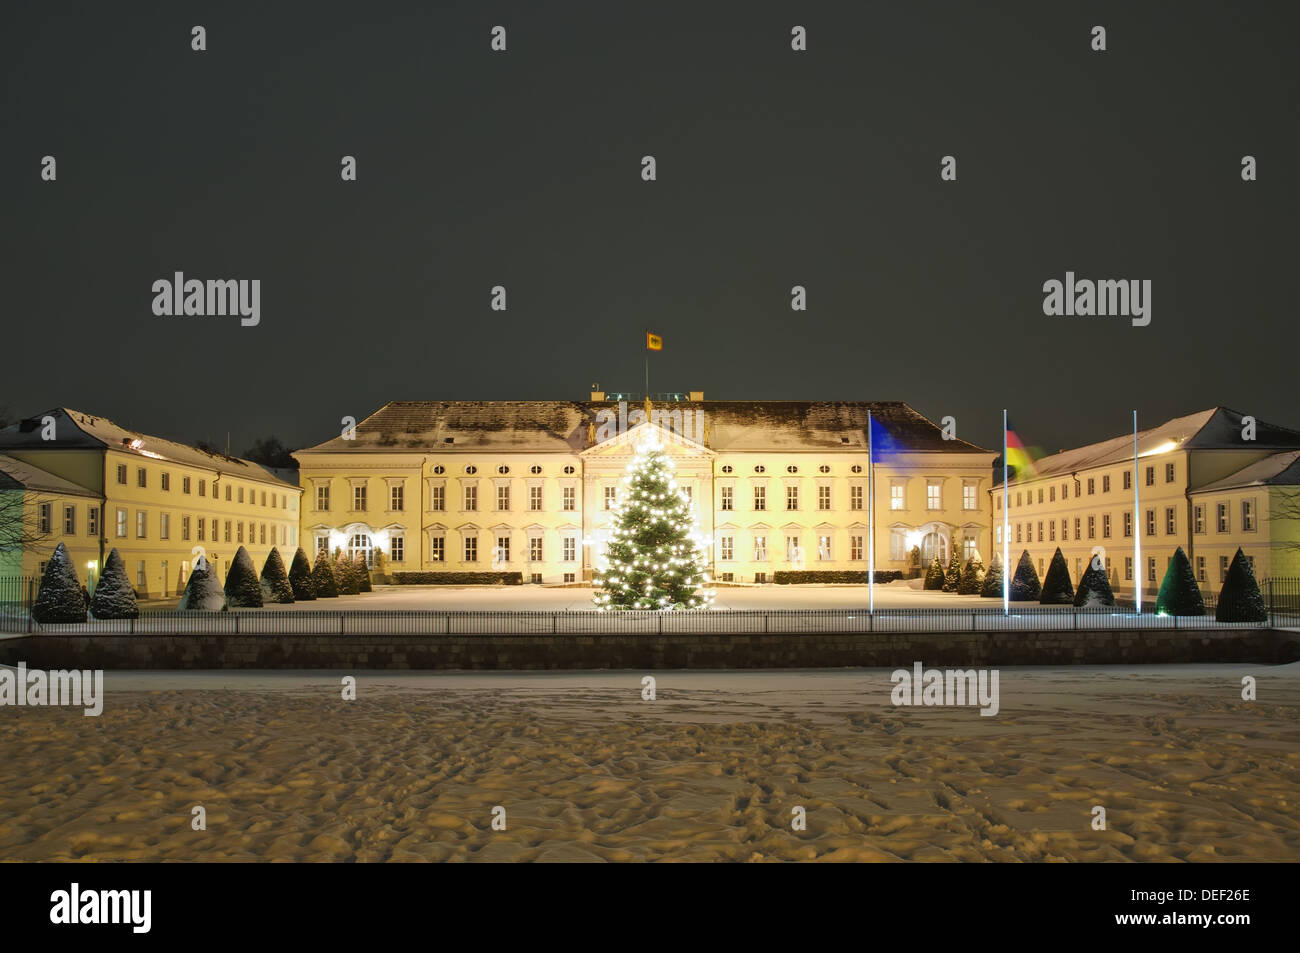 Schloss Bellevue in Berlin im Winter nachts mit schönen Weihnachtsbaum Stockfoto